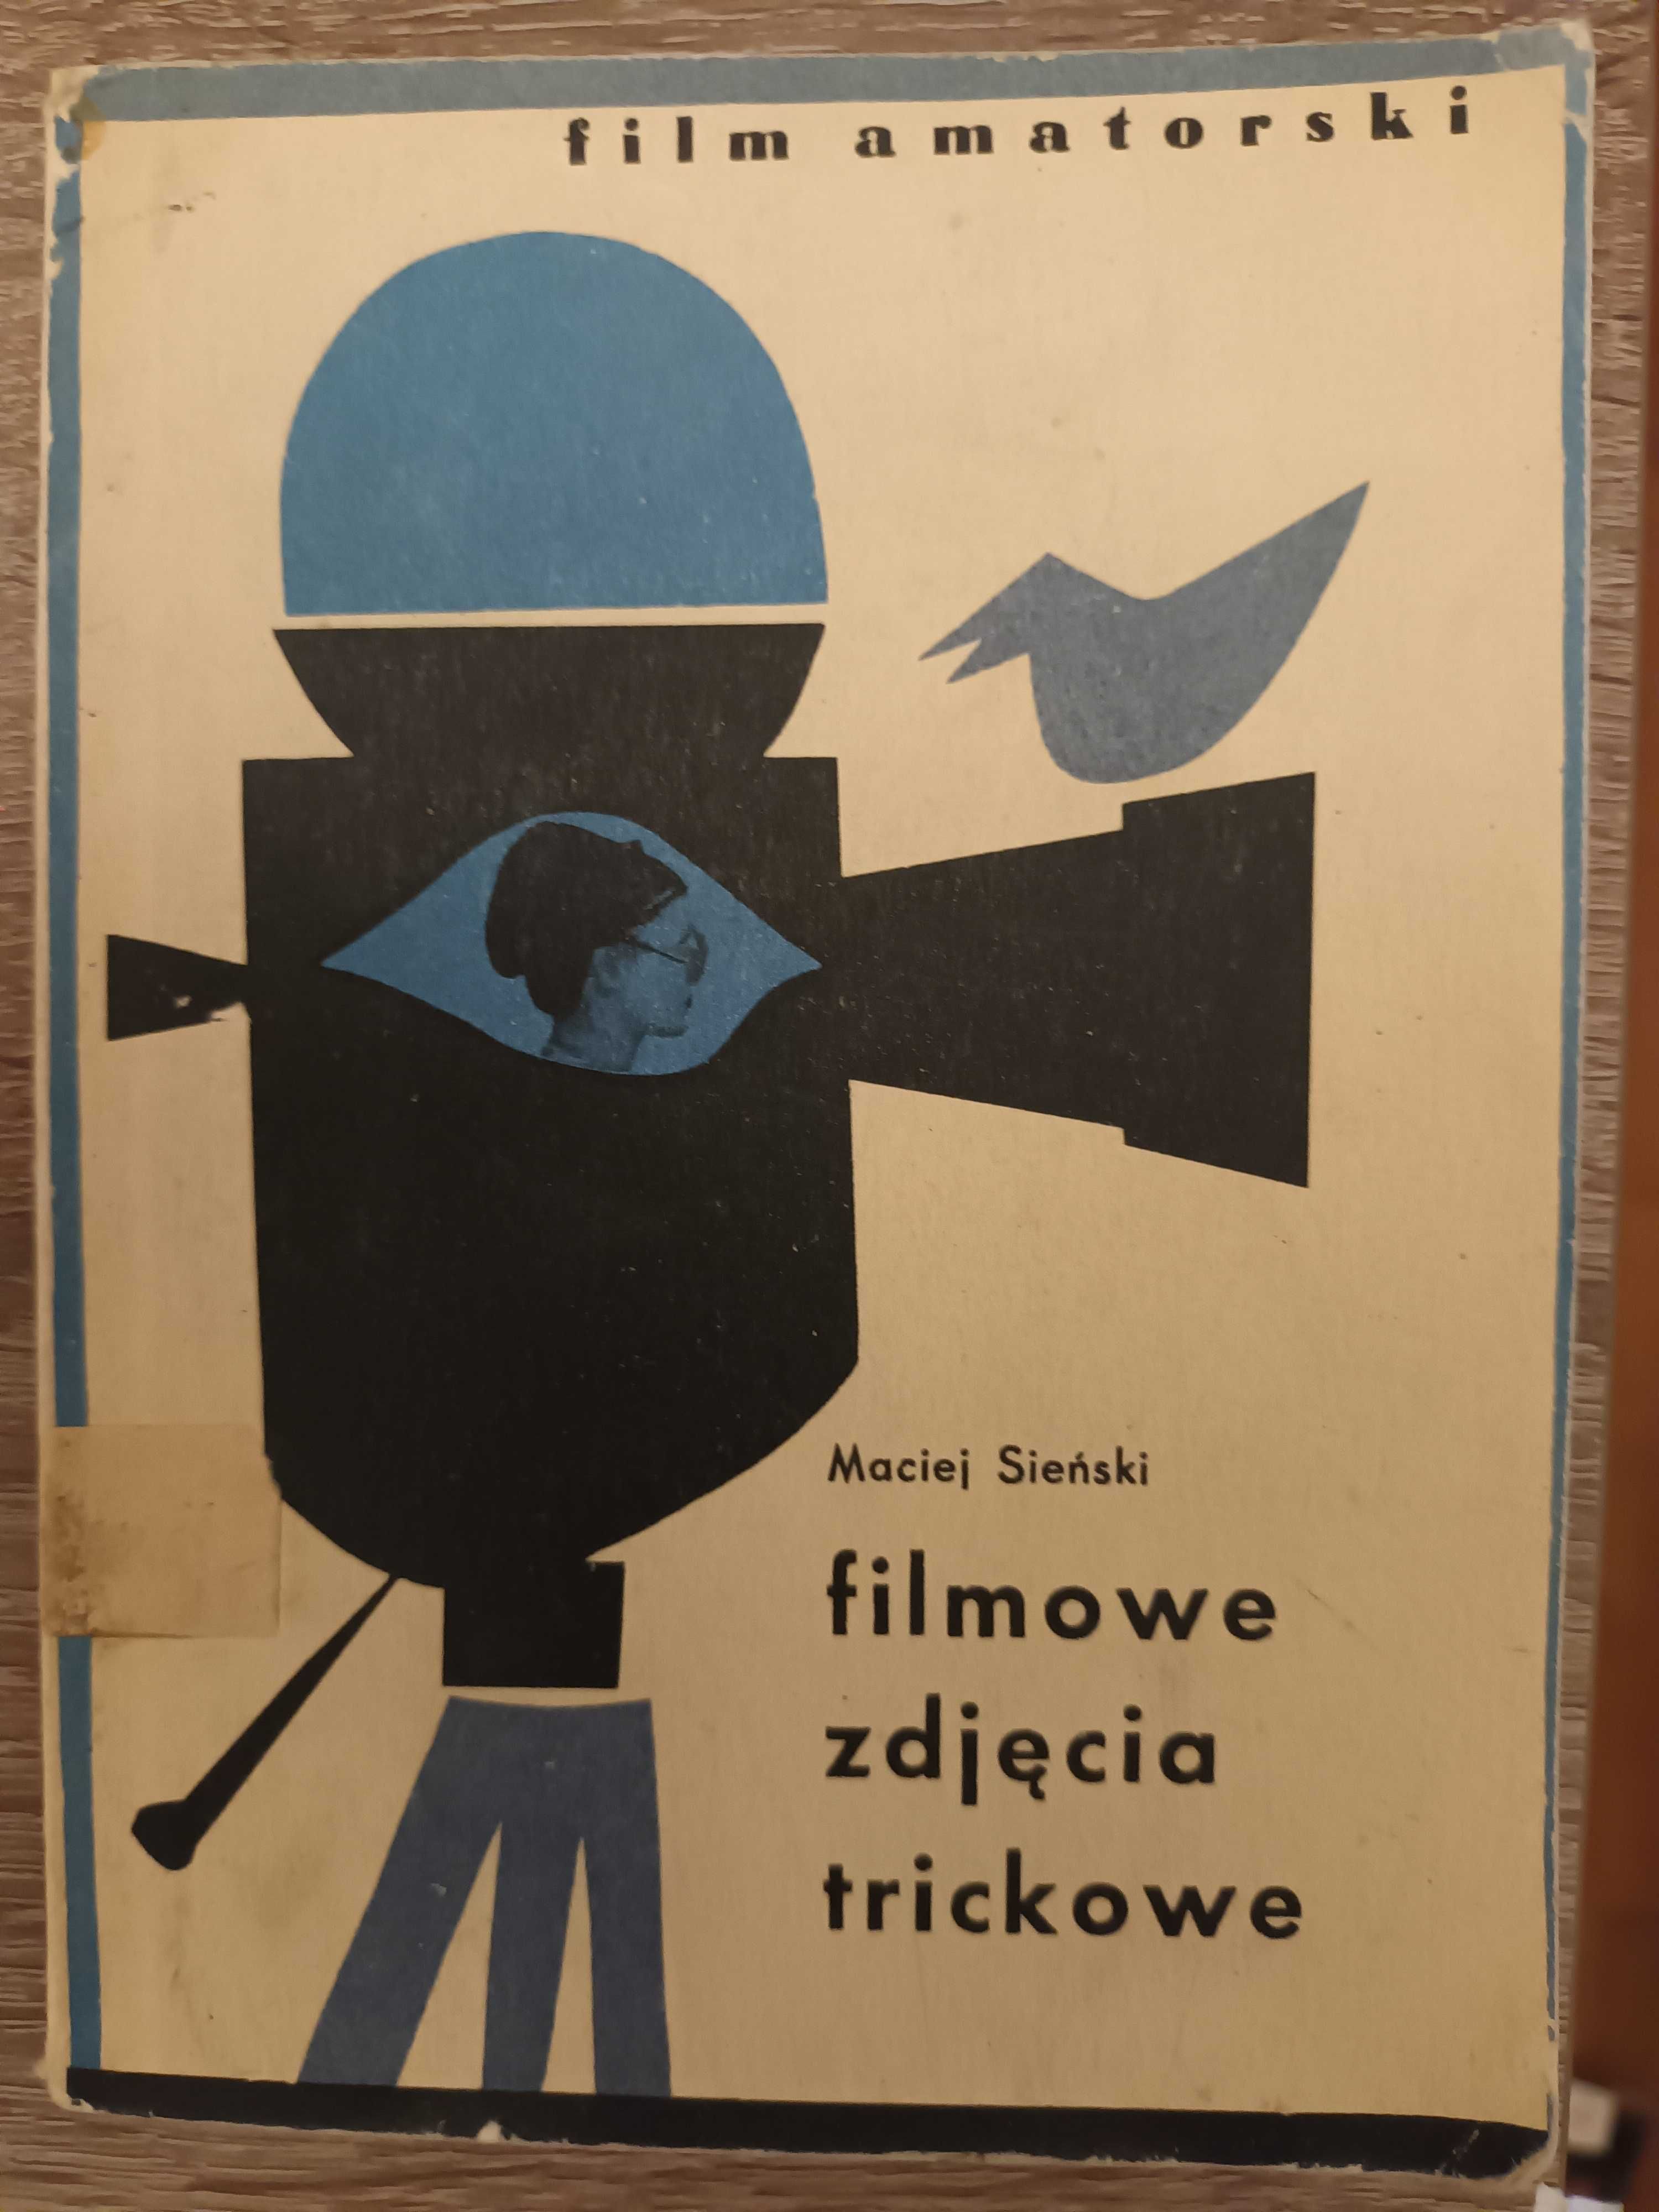 Sieński Filmowe zdjęcia trockowe 7zł 1966r. wyd. 1